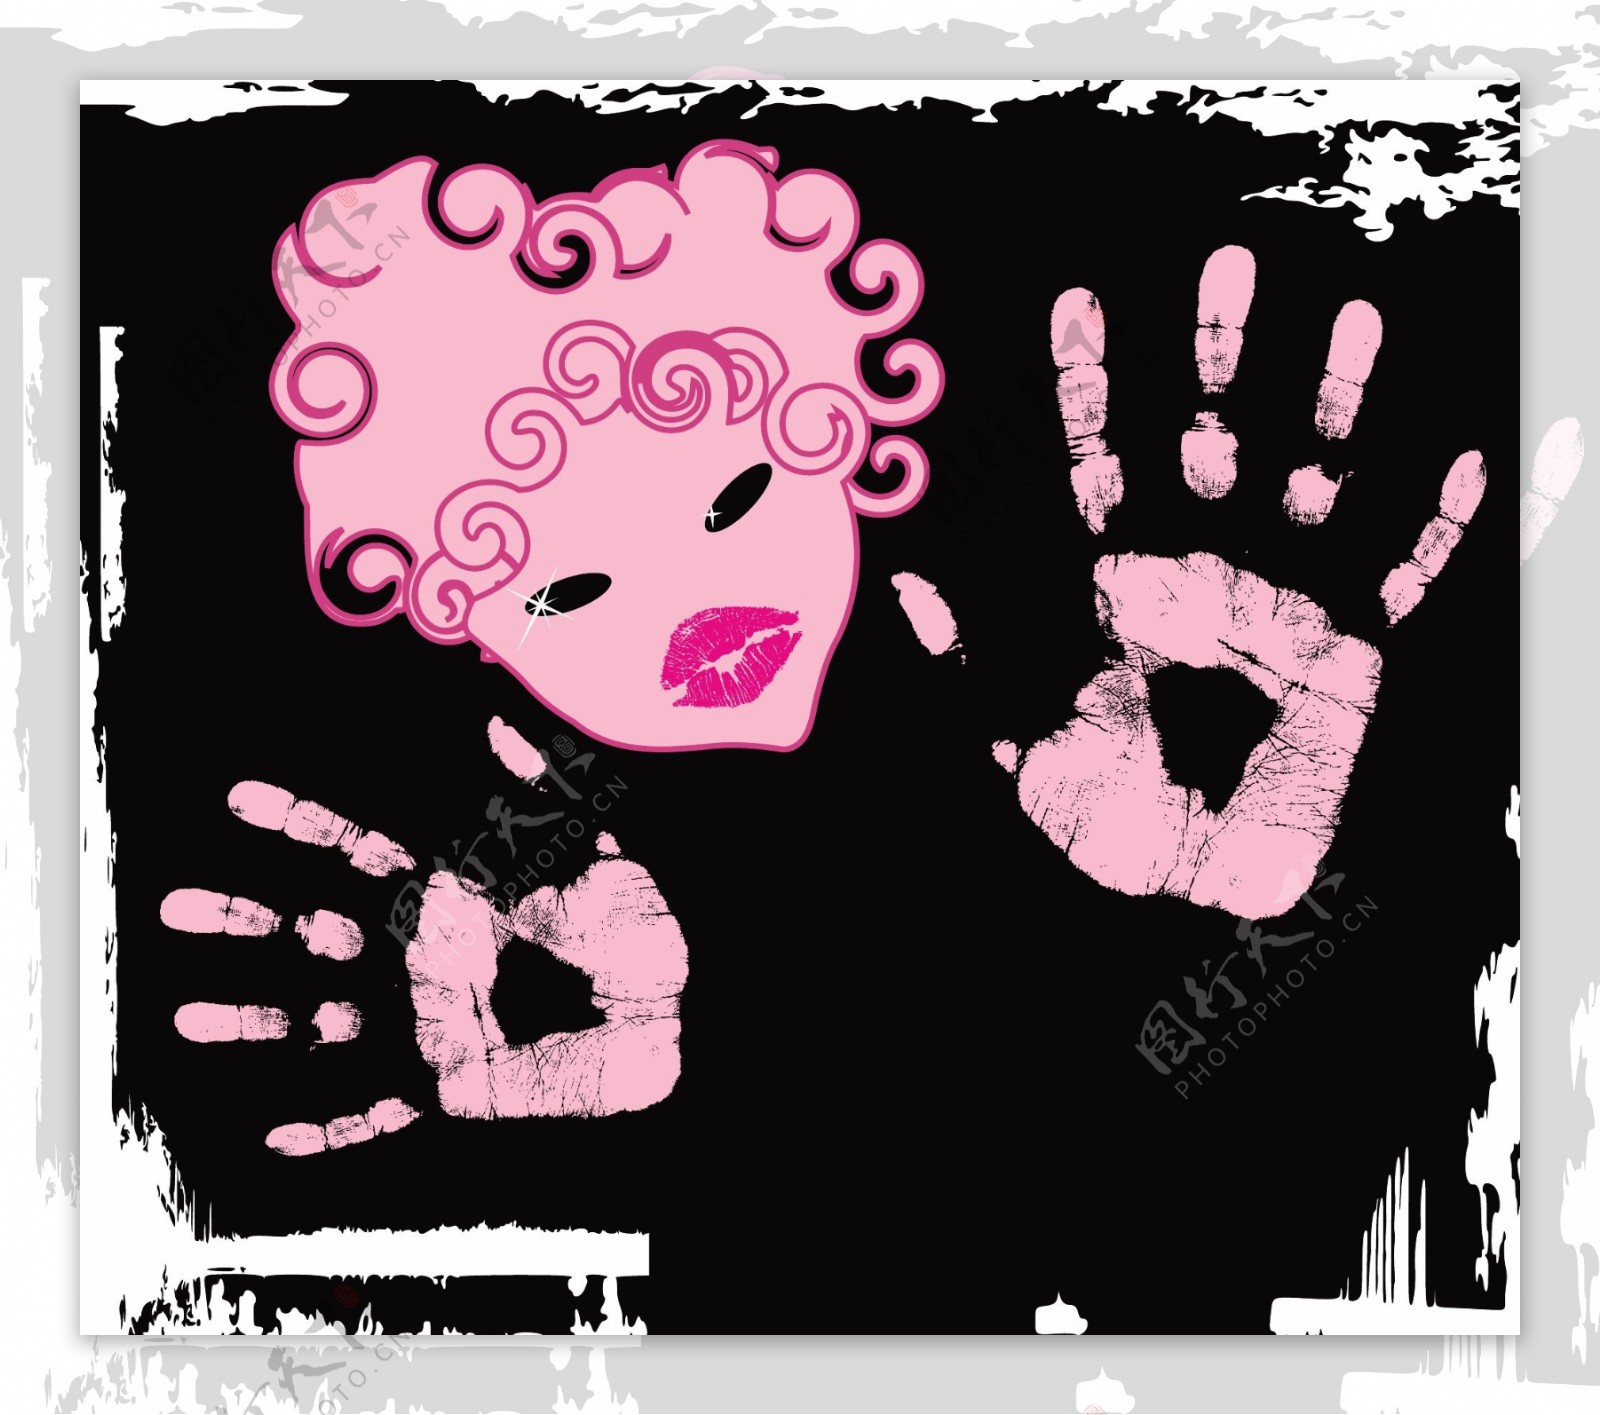 粉红色抽象女性头像与手掌印矢量素材